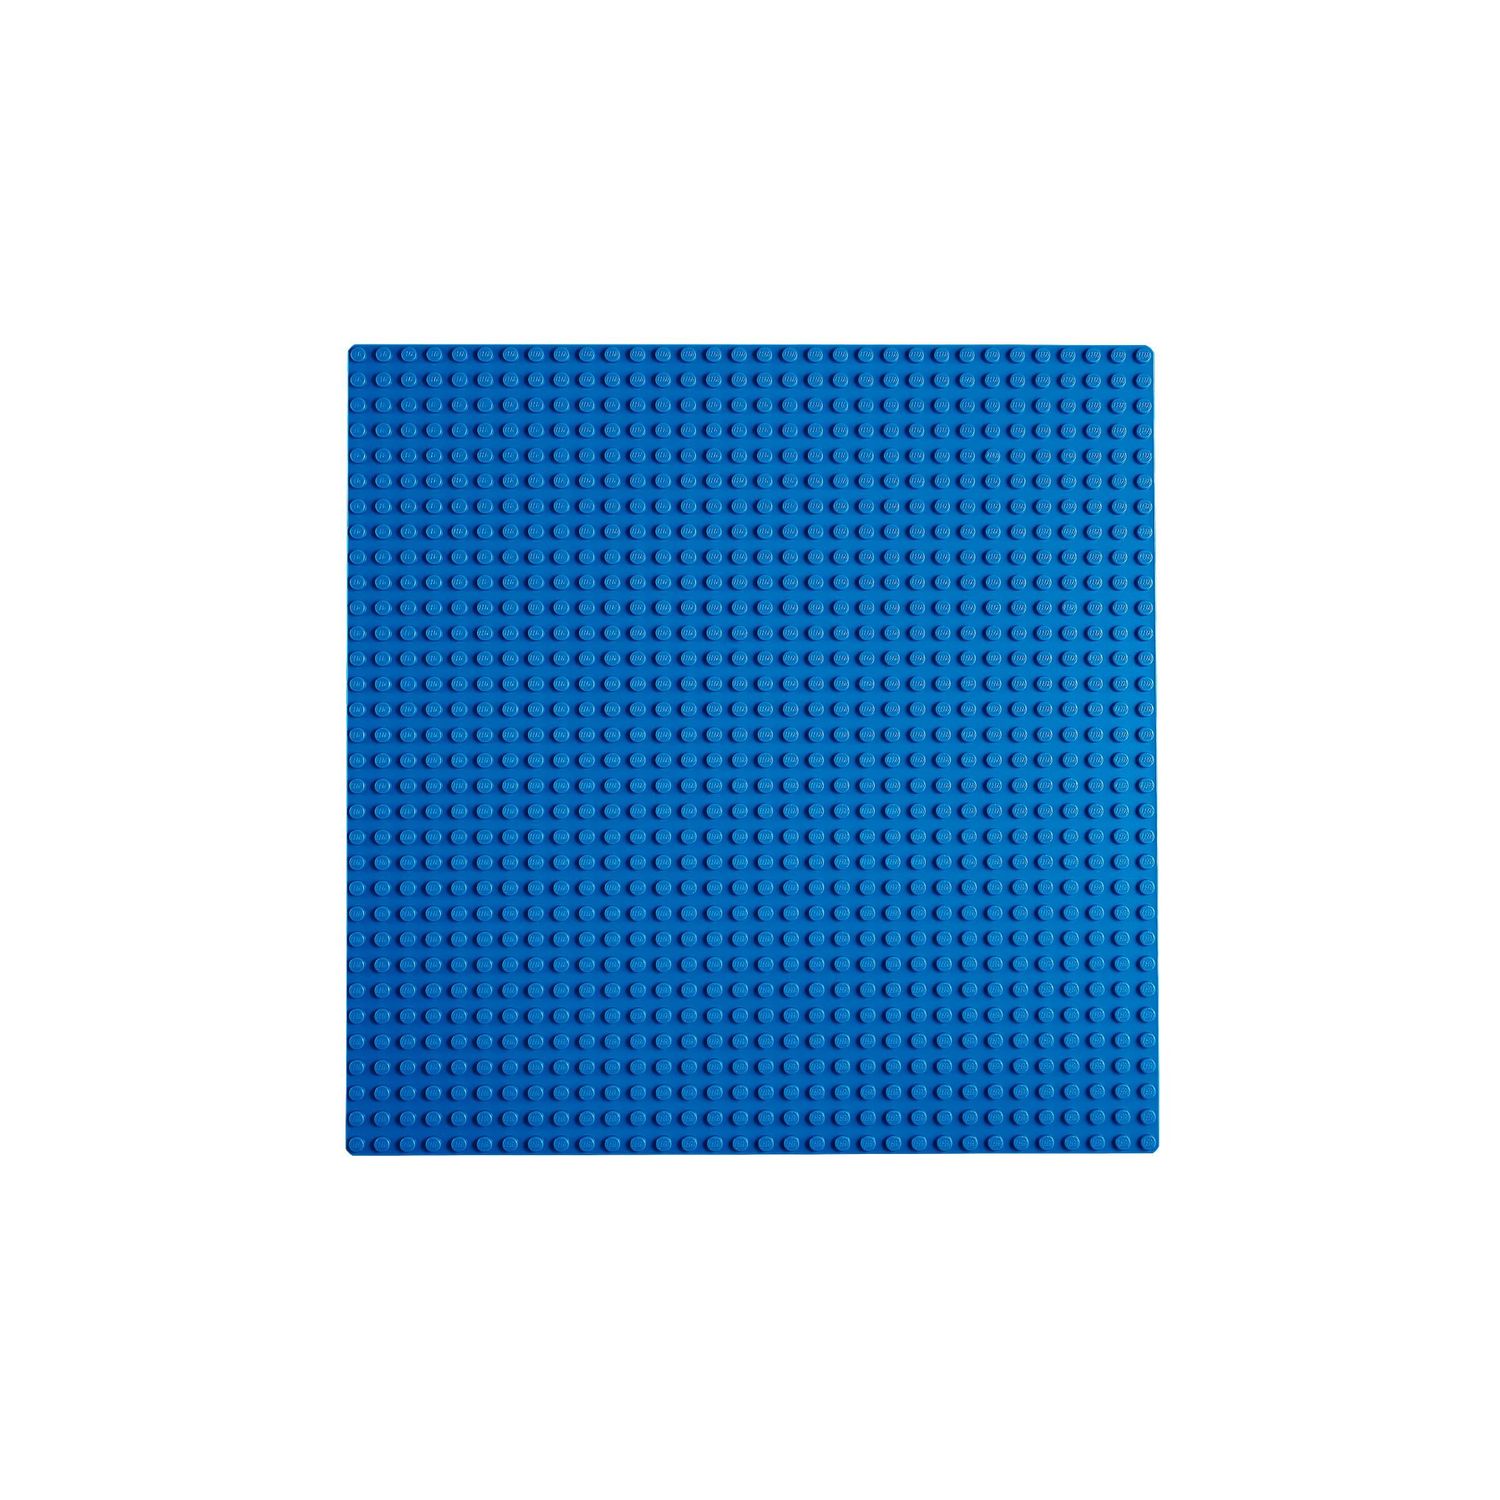 Конструктор LEGO Classic Базовая пластина Синяя 11025 - фото 3